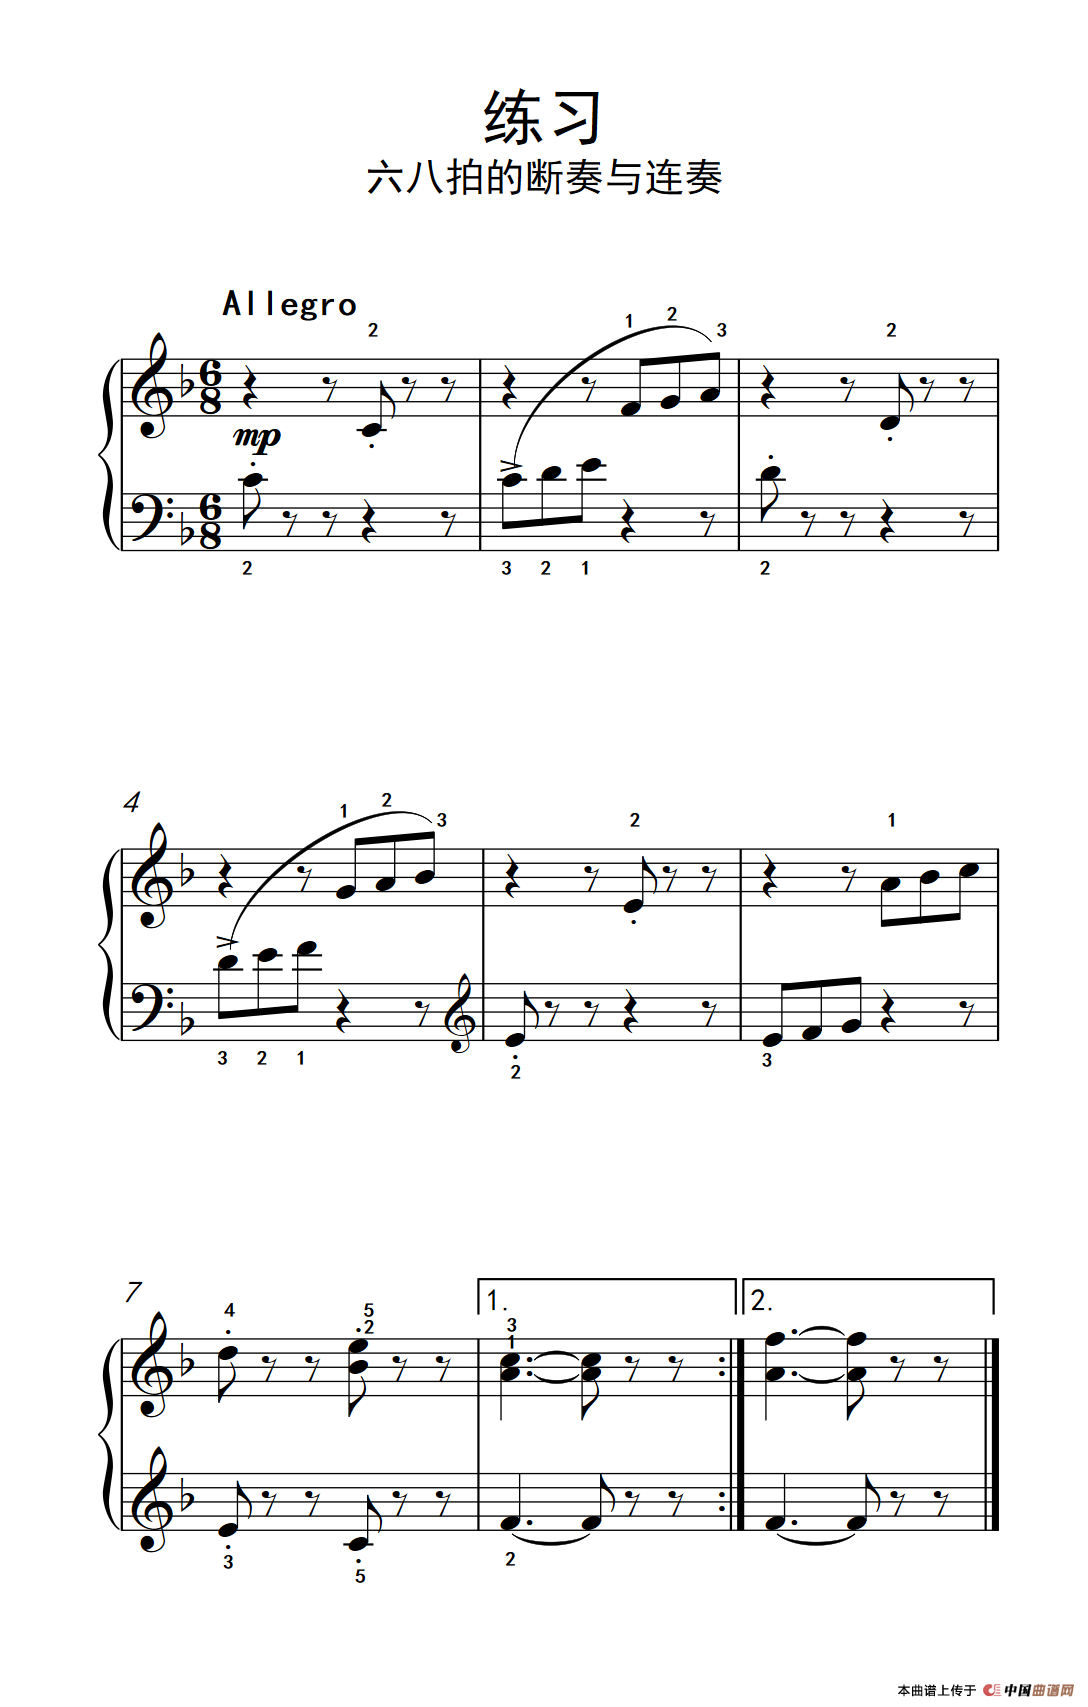 《练习 六八拍的断奏与连奏》钢琴曲谱图分享